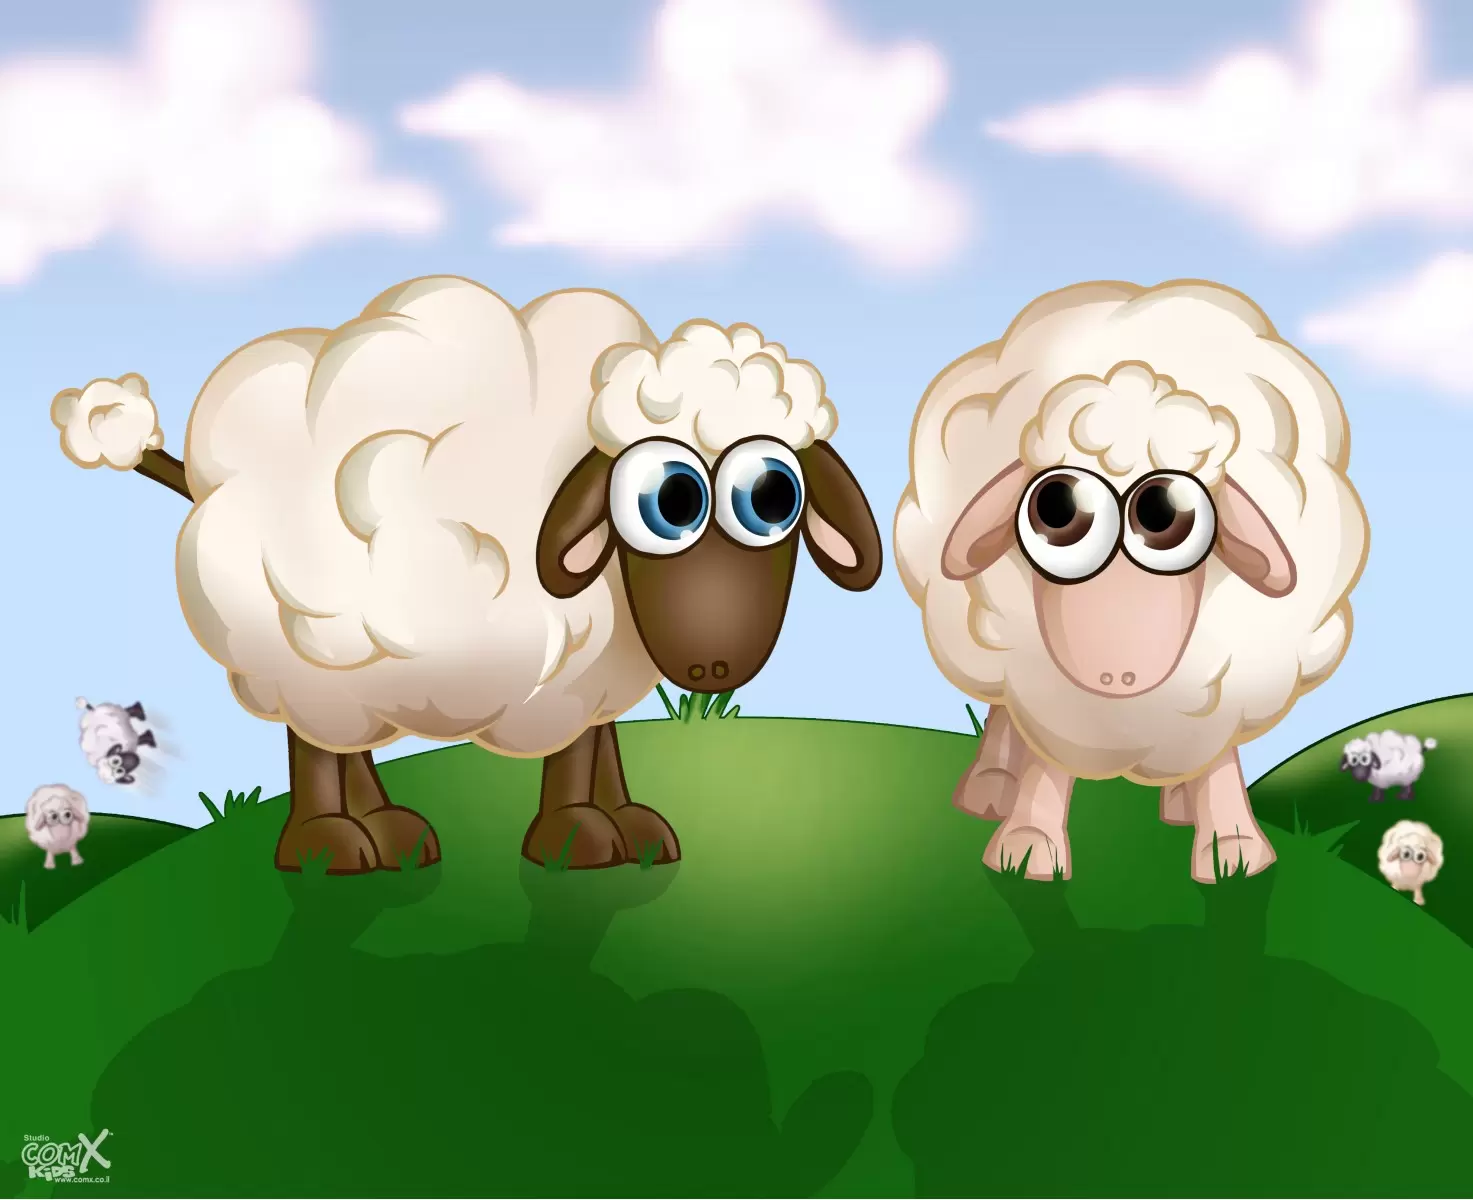 כבשים על גבעה - חנן אביסף - תמונות לחדרי תינוקות קומיקס  - מק''ט: 287913